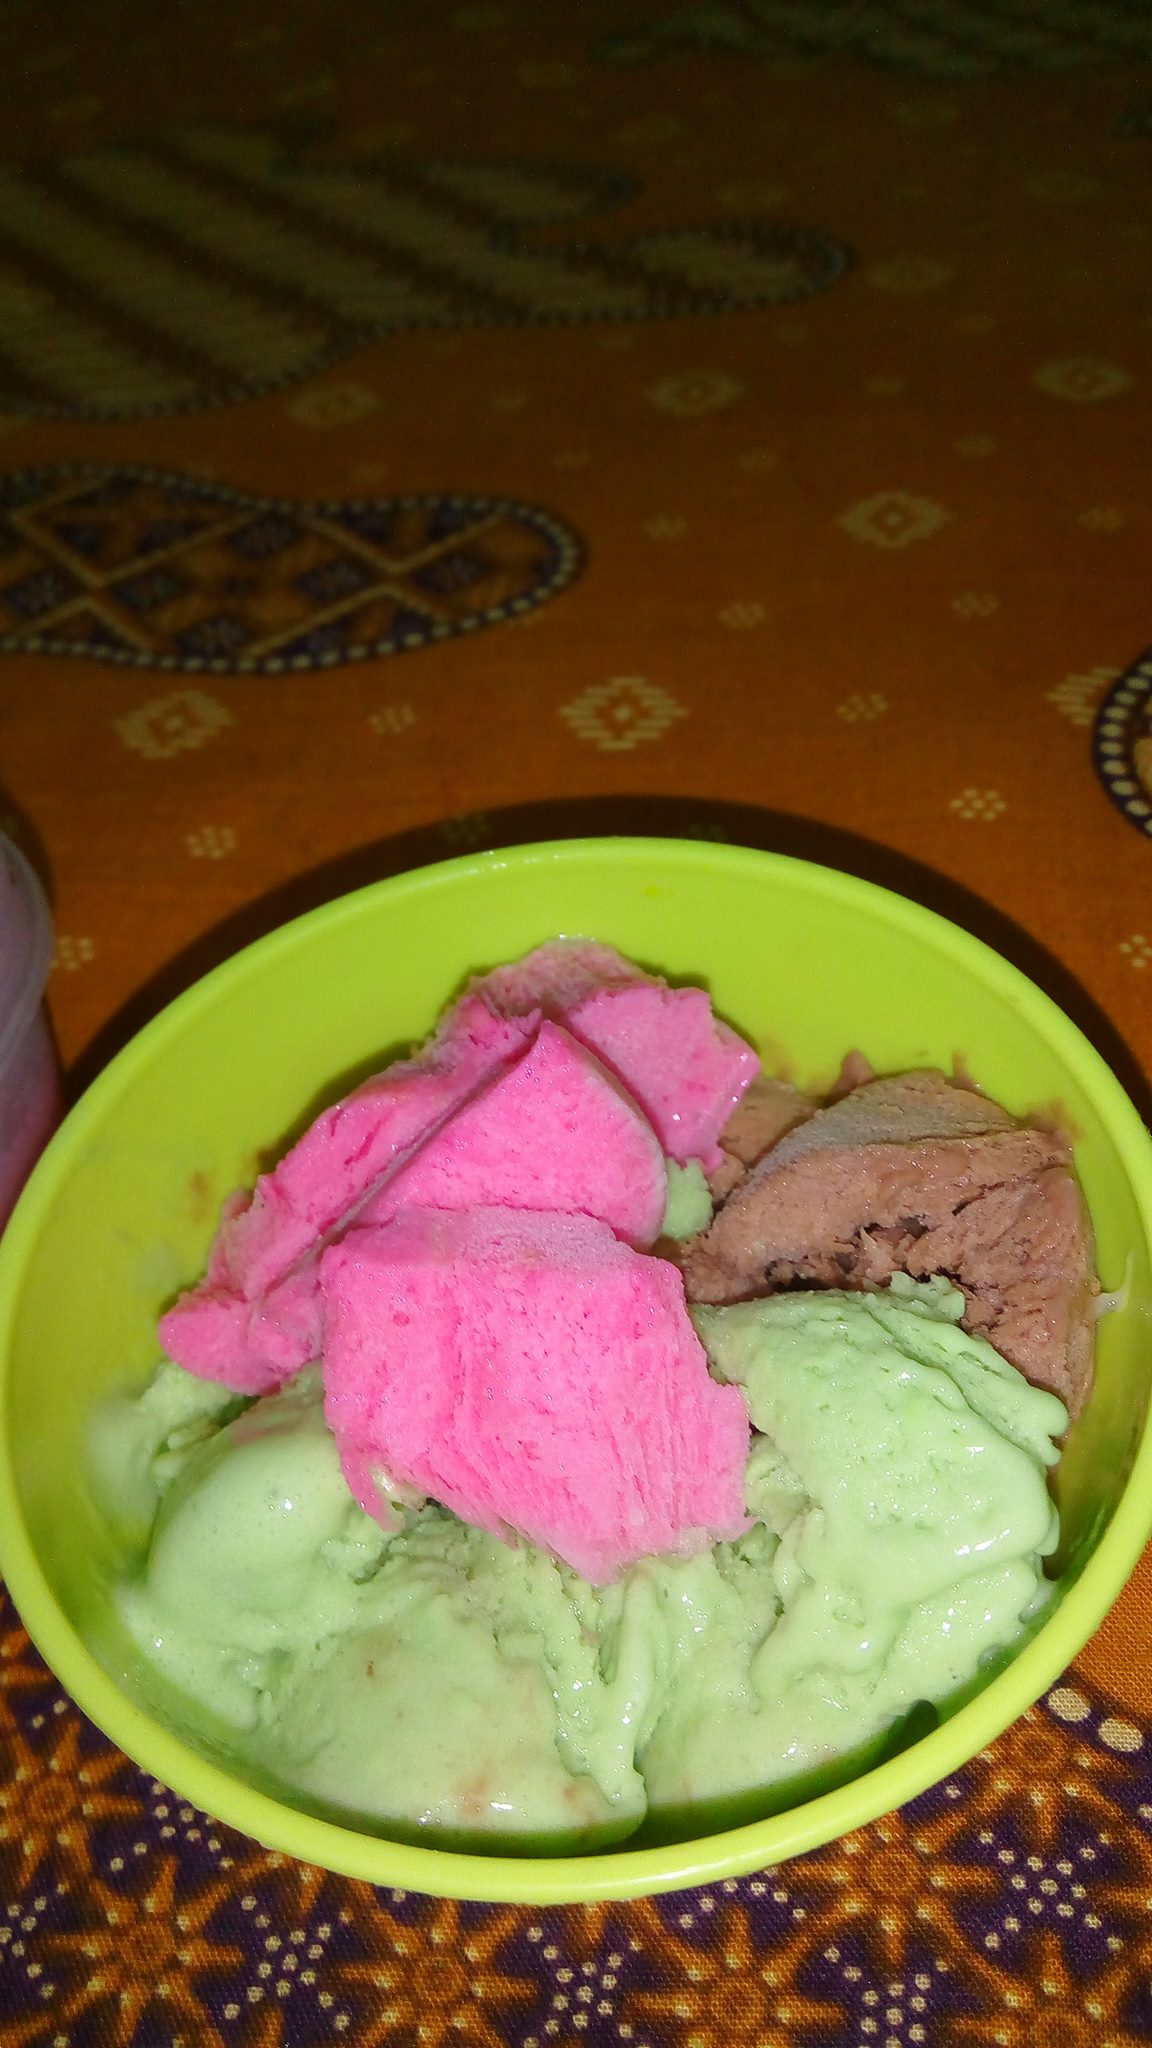 Ice Cream Homemade by Septi Wiwit Ambarwati